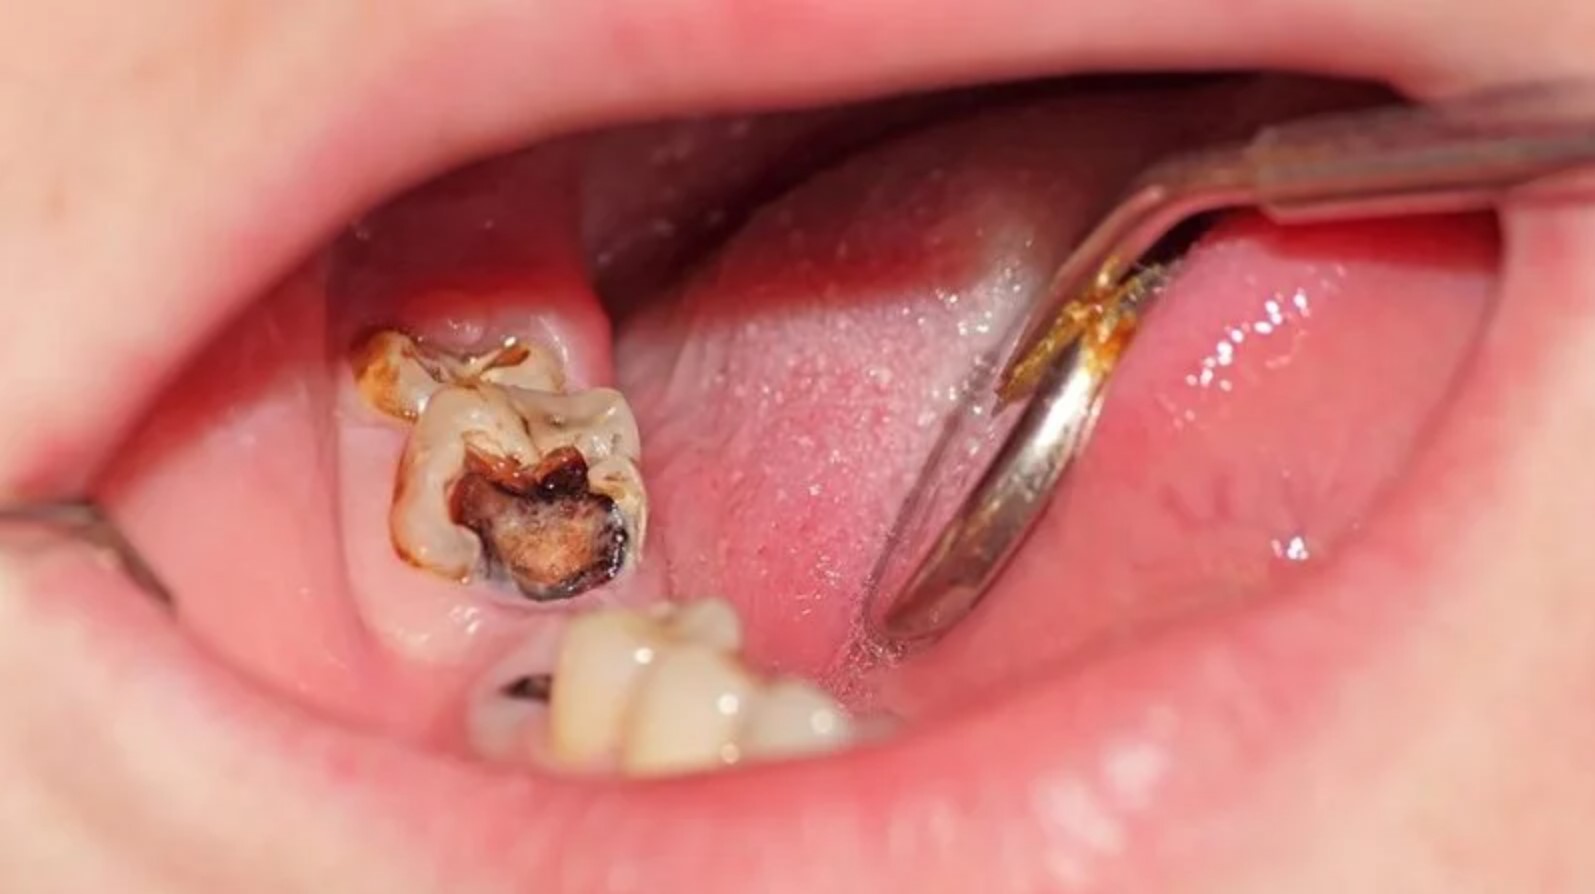 răng số 6 bị viêm tủy nặng